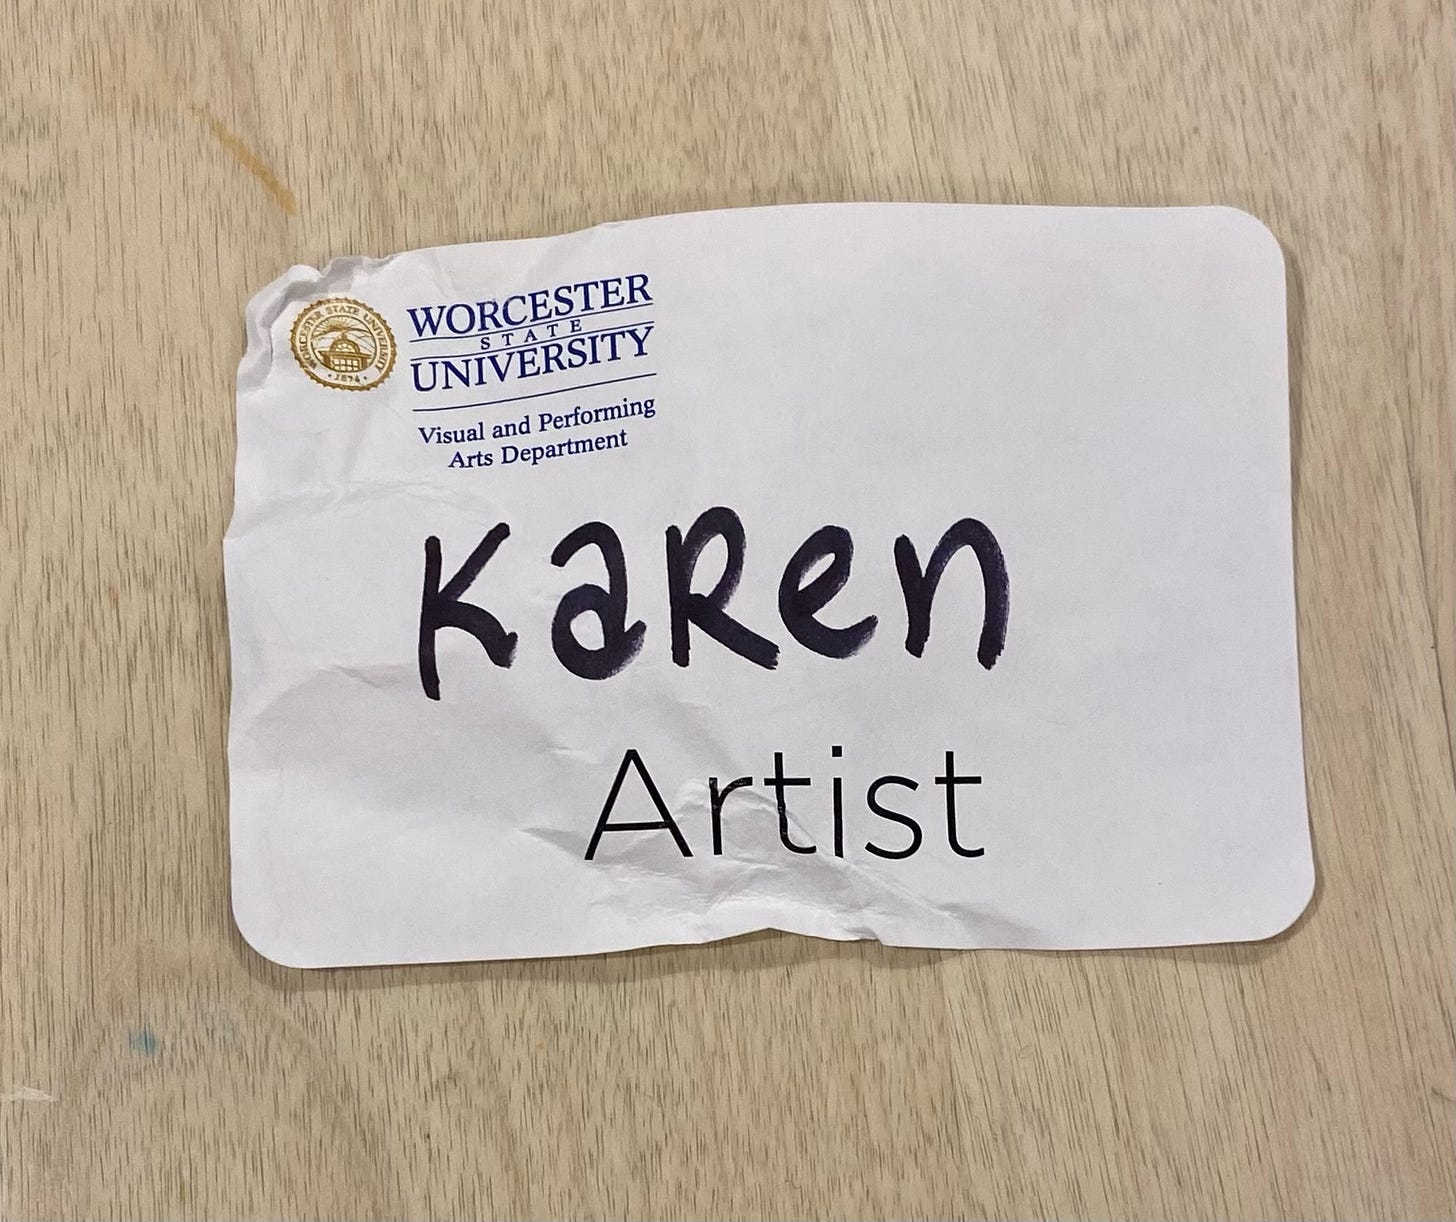 name tag reads, Karen, Artist